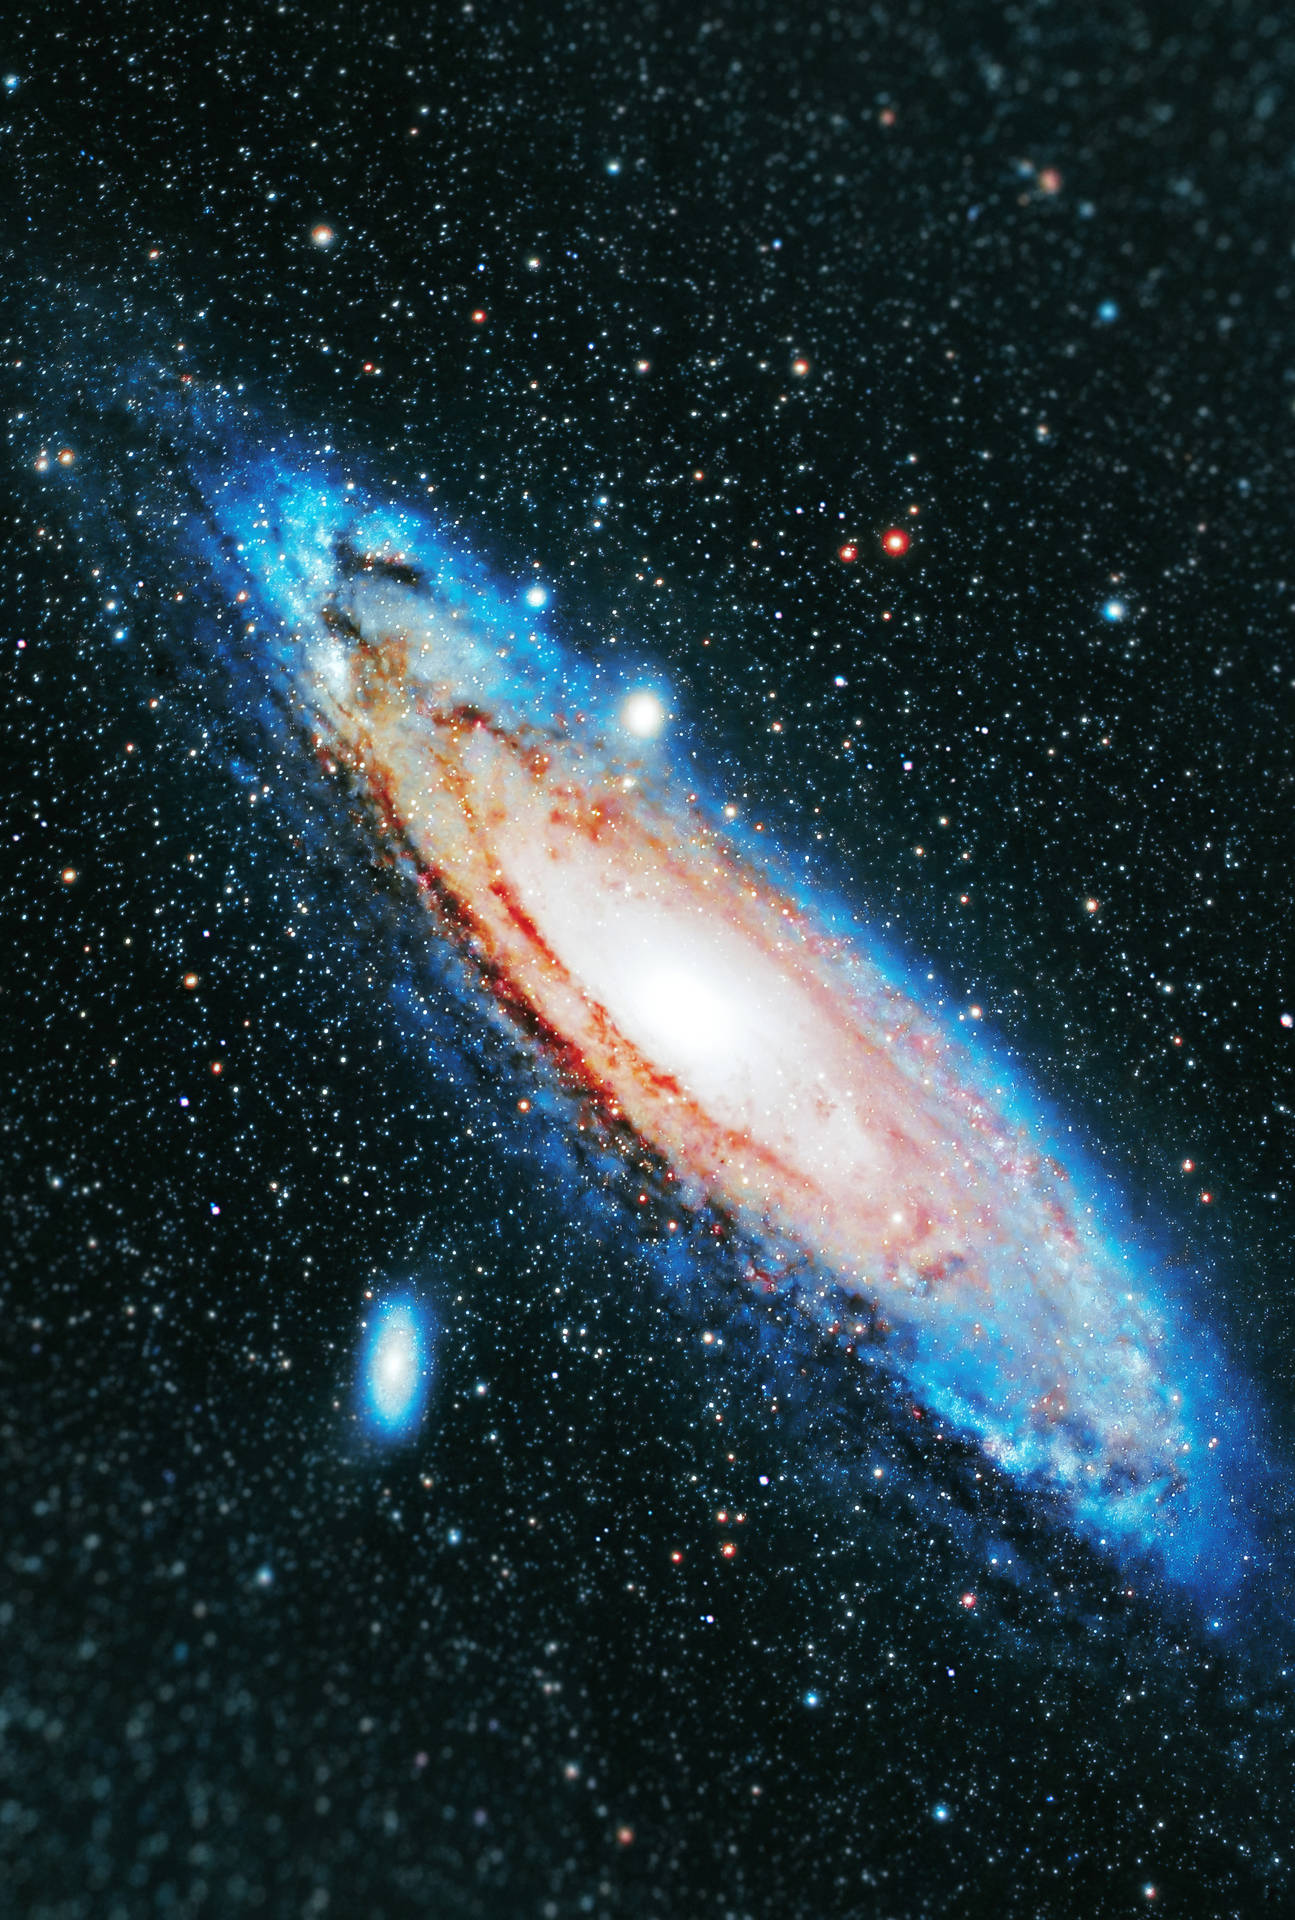 Galáxiade Andrômeda No Espaço Universal. Papel de Parede